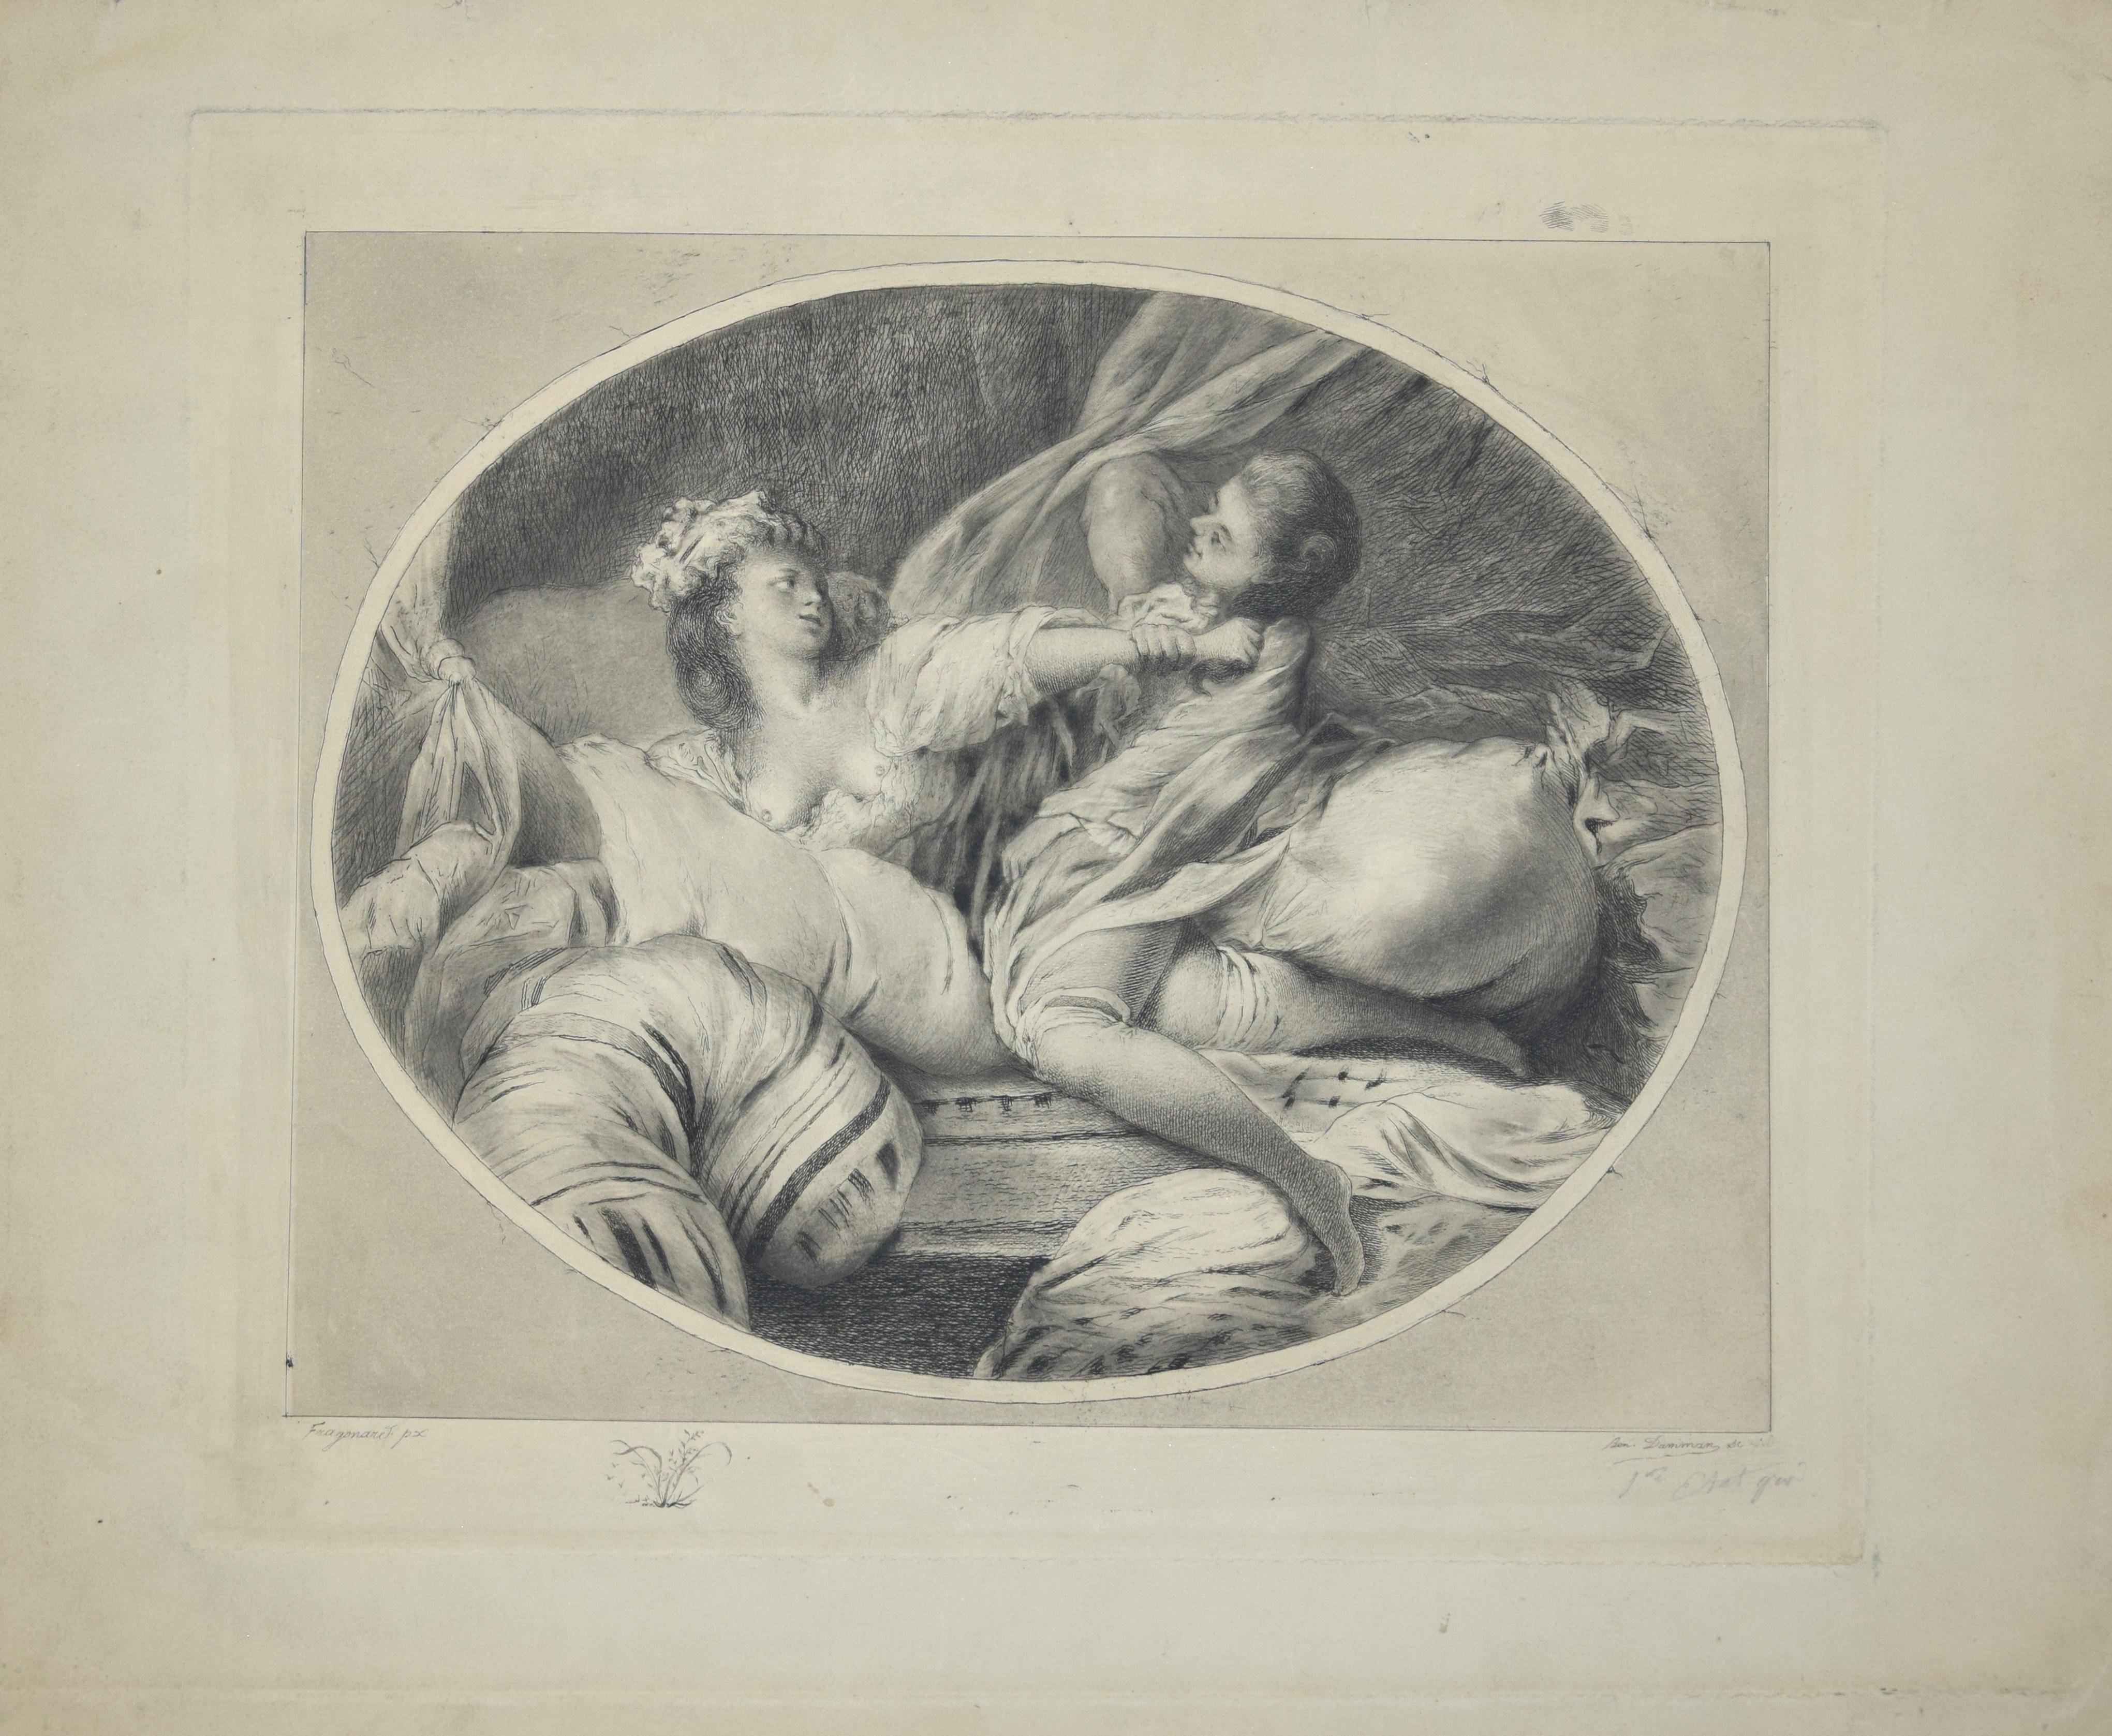 La Chemise Enlevée ist ein Originalkunstwerk des französischen Künstlers Benjamin Damman aus dem Jahr 1909.

Das Kunstwerk ist eine Originalradierung nach einem bedeutenden Kunstwerk von Fragonard. Nachweis des ersten Zustands. Rechts unten